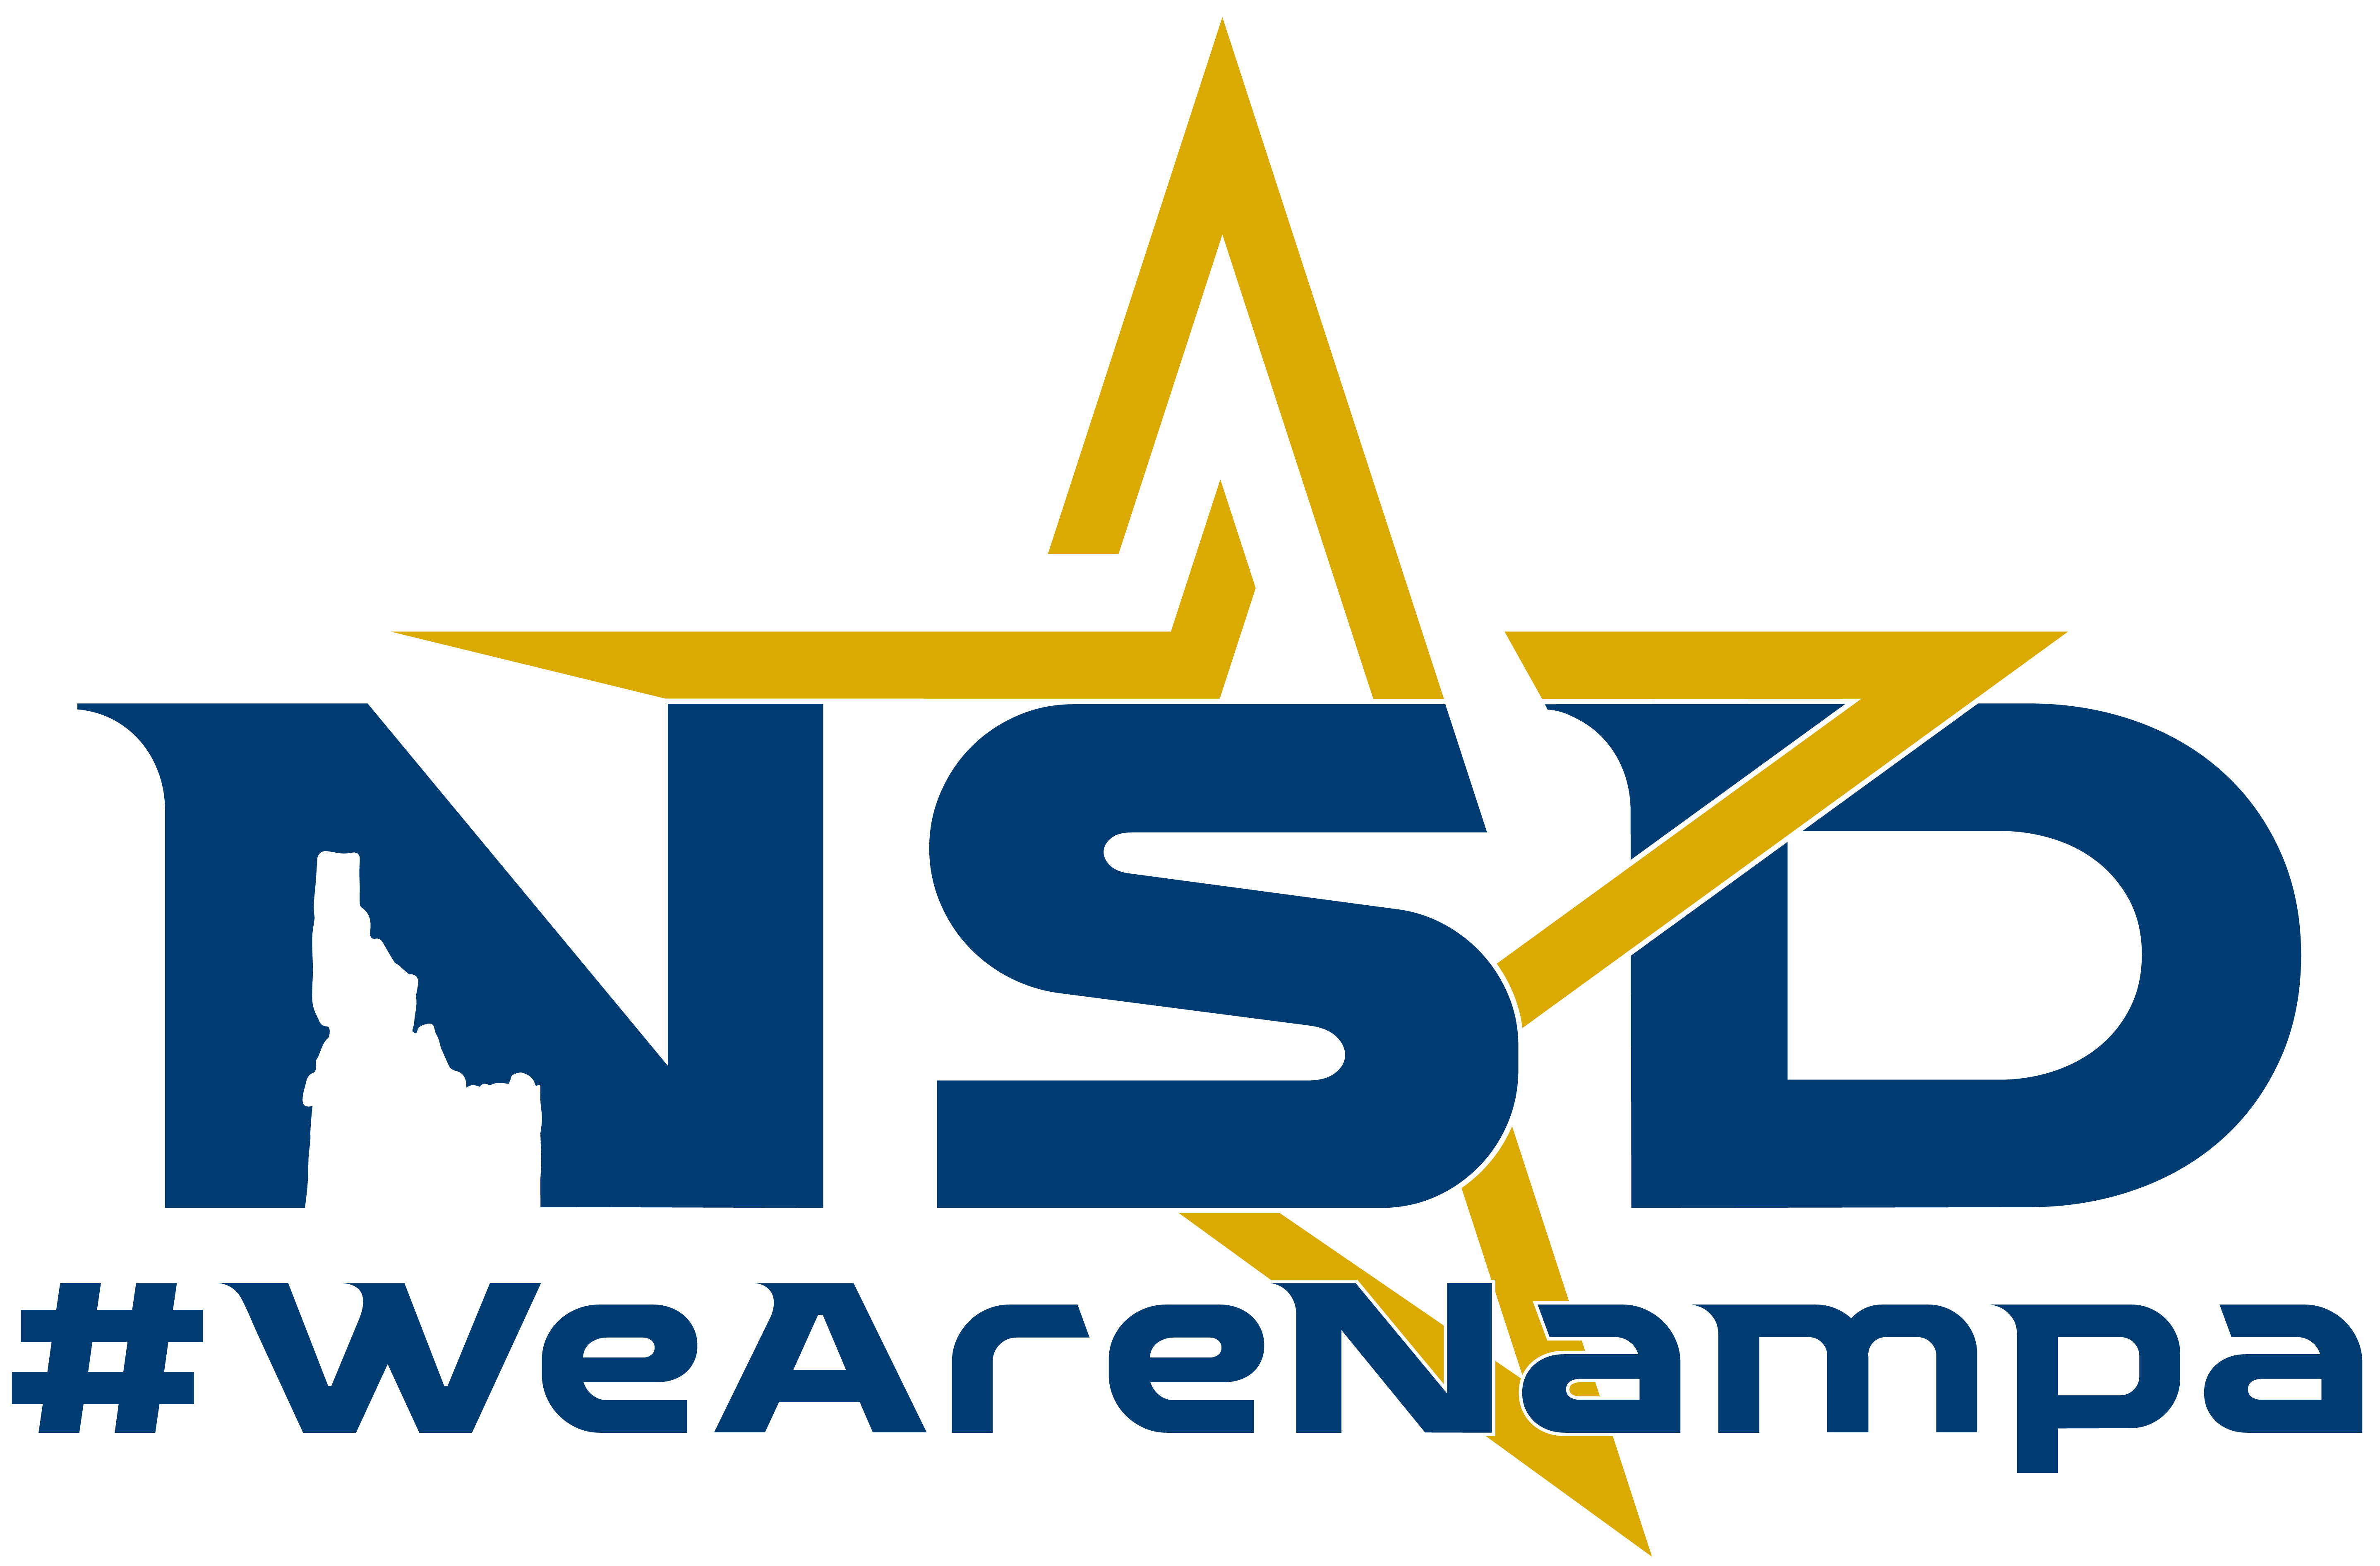 NSD Logo